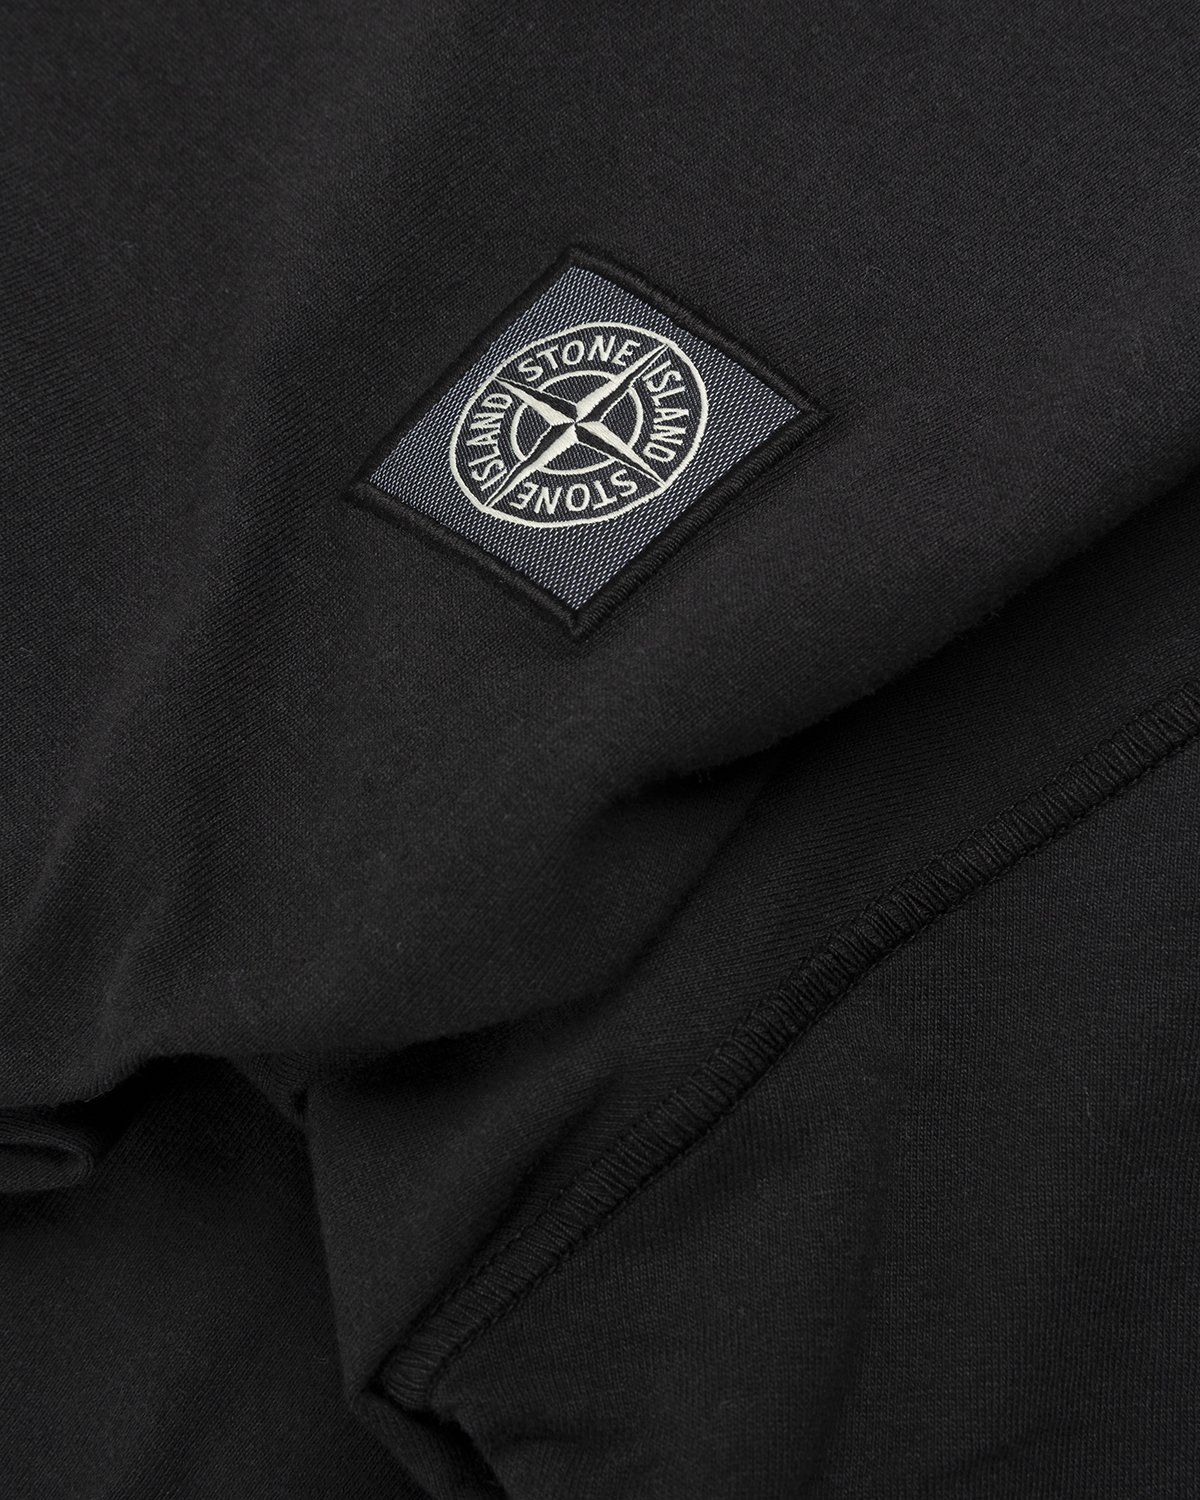 Stone Island - 23757 Garment-Dyed Fissato T-Shirt Black - Clothing - Black - Image 5